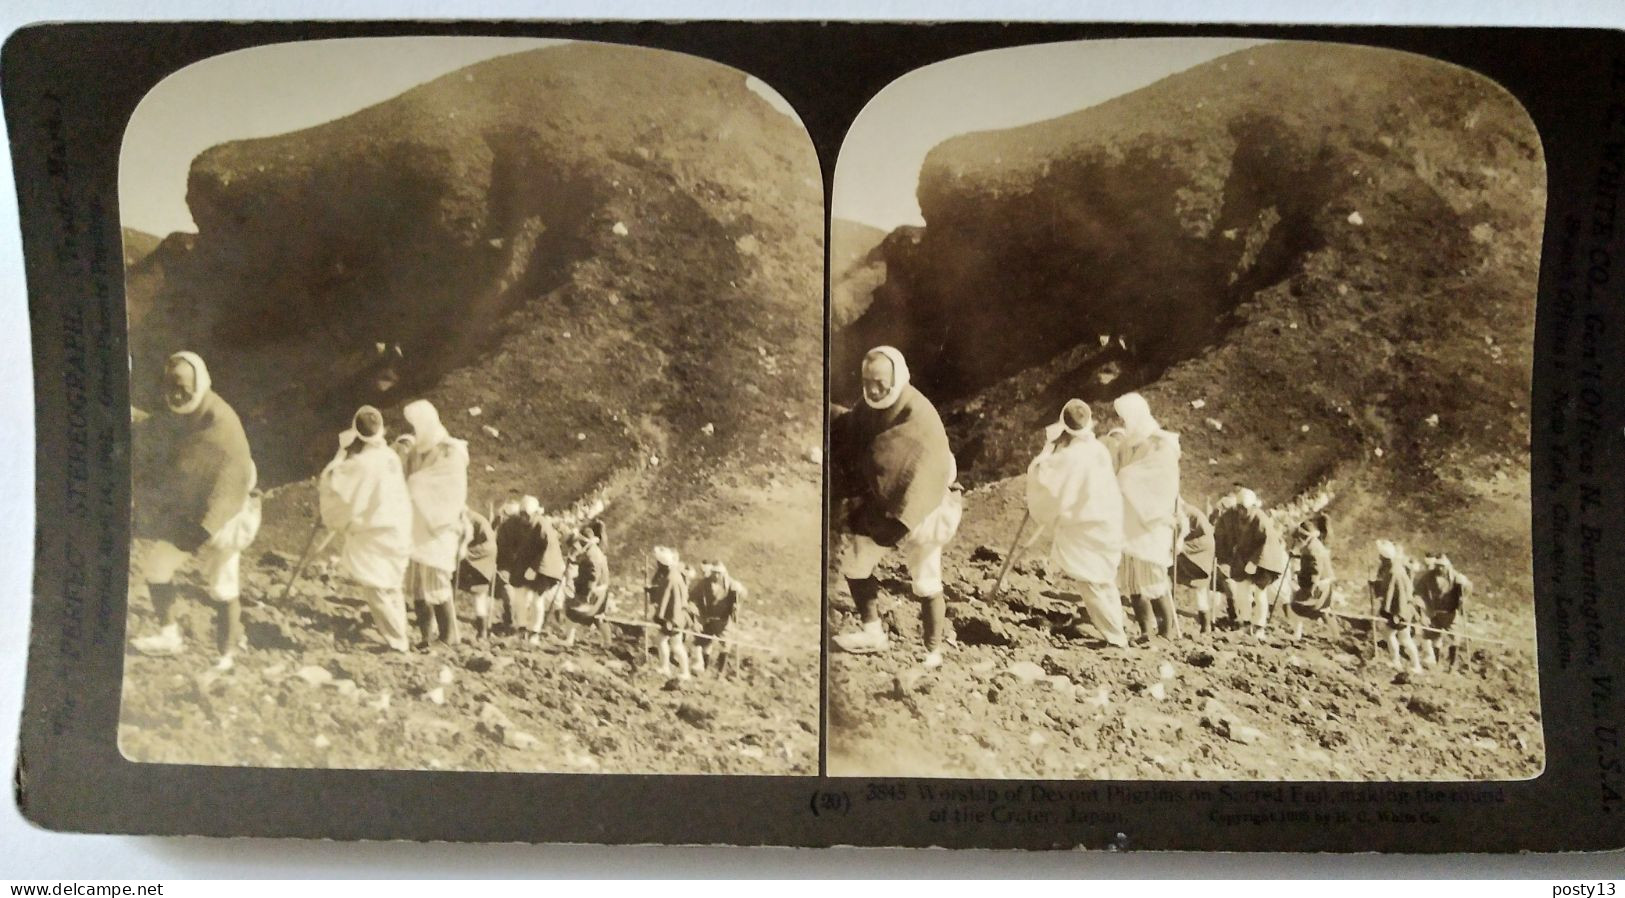 Photographie Stéréoscopique Pèlerins Montant Au Mont Fuji  - 1903 H.C White - TBE - Stereo-Photographie